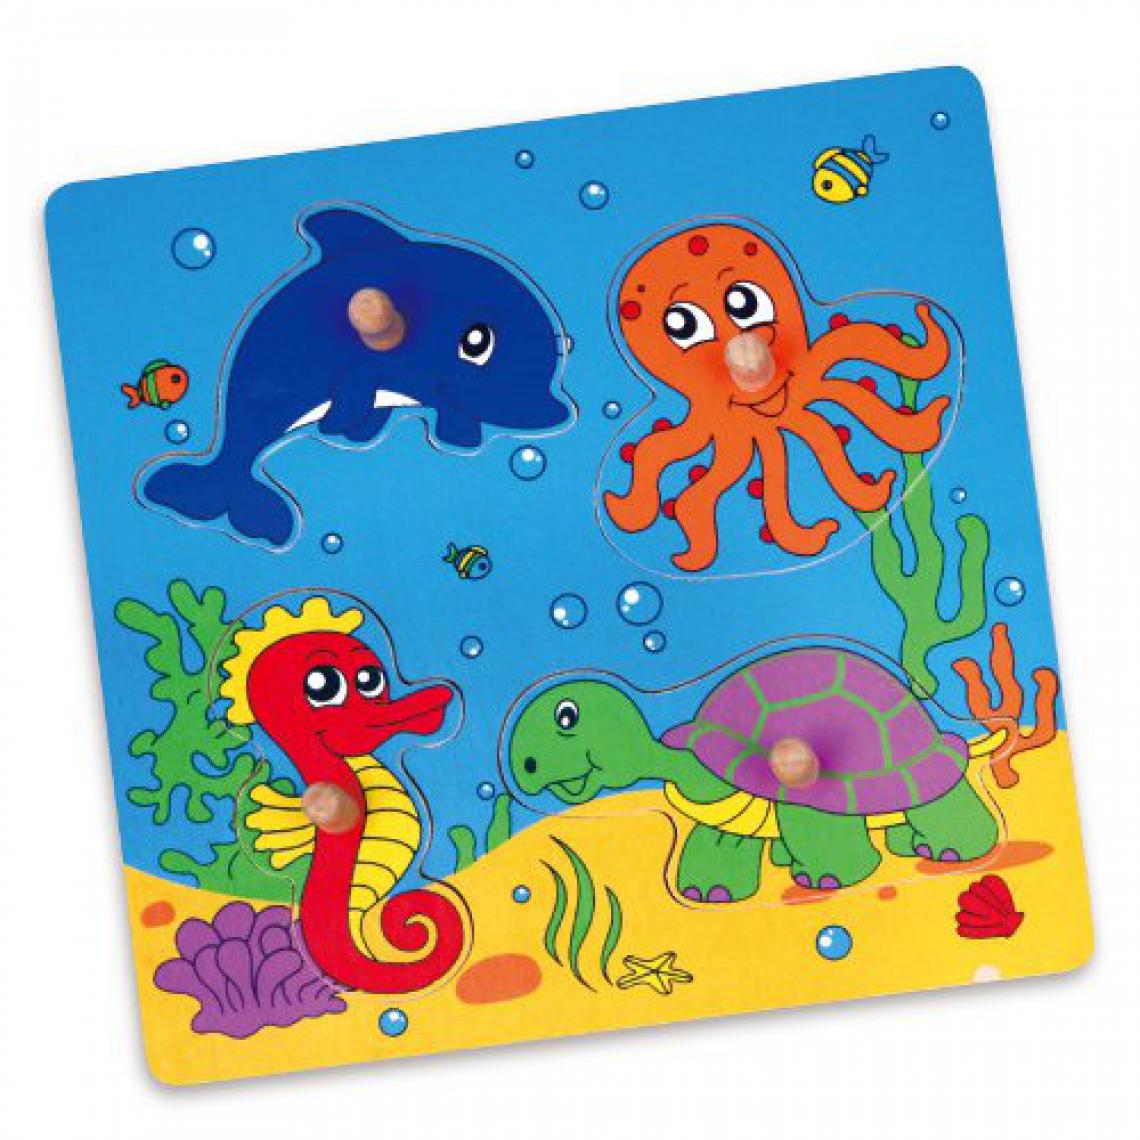 Hucoco - Puzzle Animaux de la Mer jeu éducatif en bois bébé enfant 1an+ - Multicolore - Accessoires Puzzles